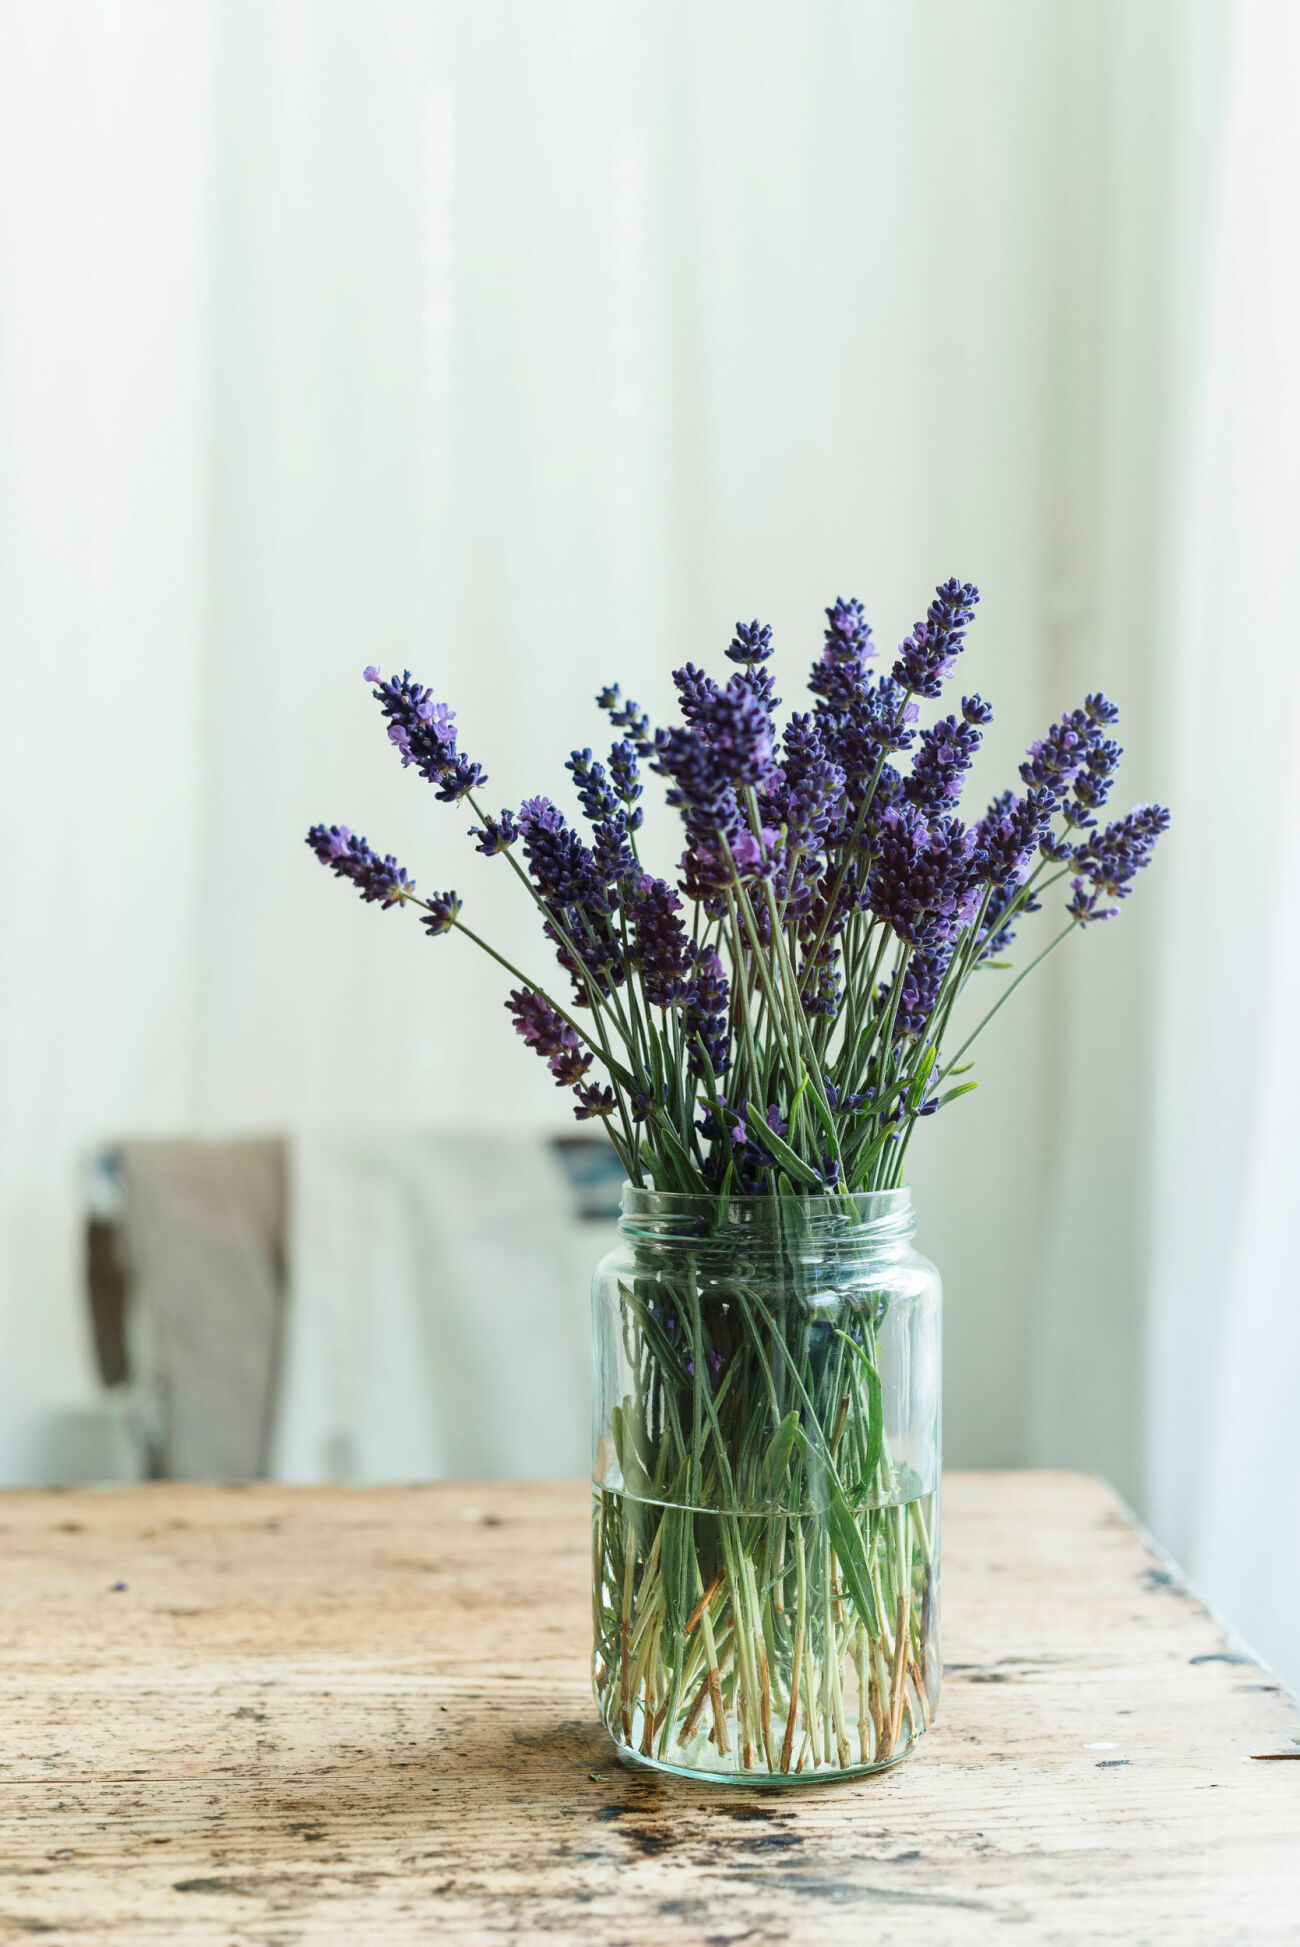 Lavendel är en ätbar blomma